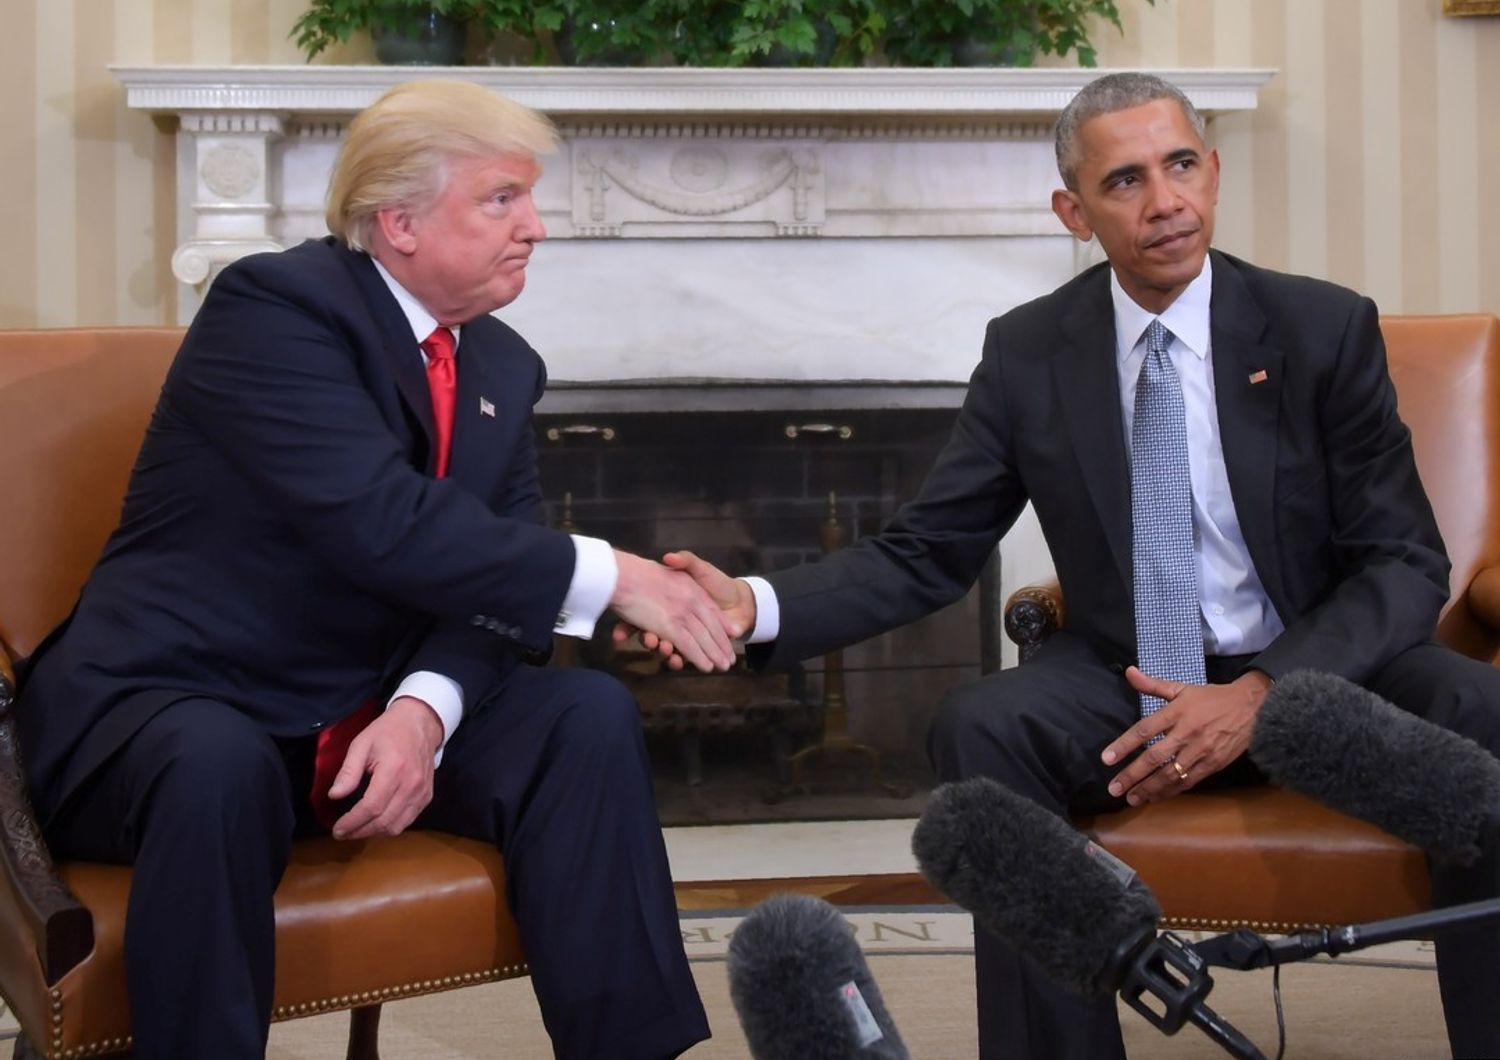 La stretta di mano tra il presidente degli Stati Uniti Barack Obama e il presidente eletto Donald Trump durante un incontro di transizione nello Studio Ovale della Casa Bianca (foto Afp)